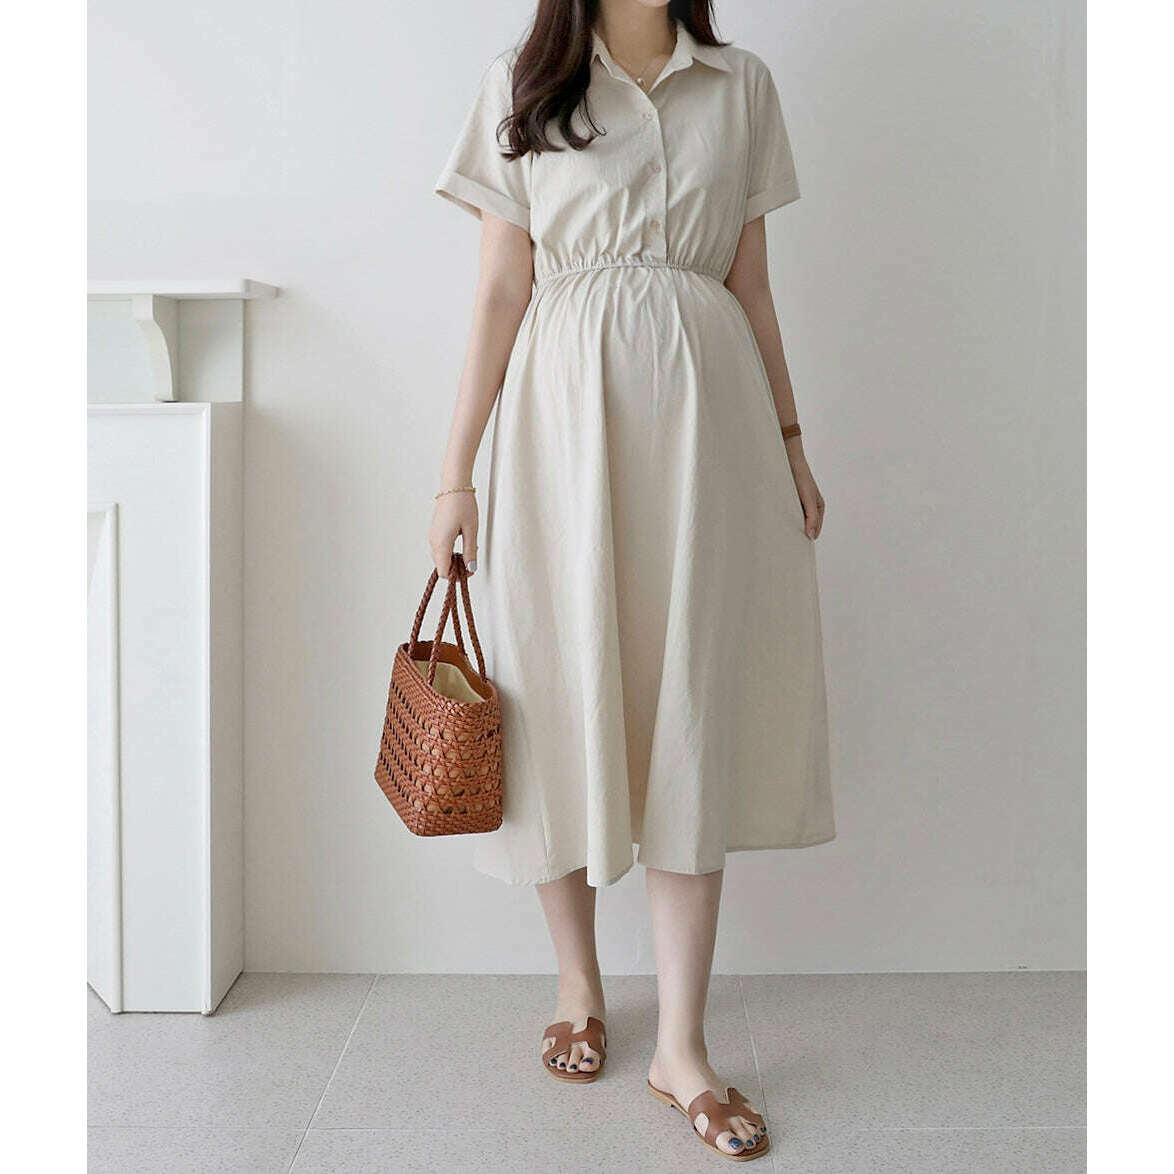 MUMMY.cc:短袖棉質襯衫哺乳連身裙